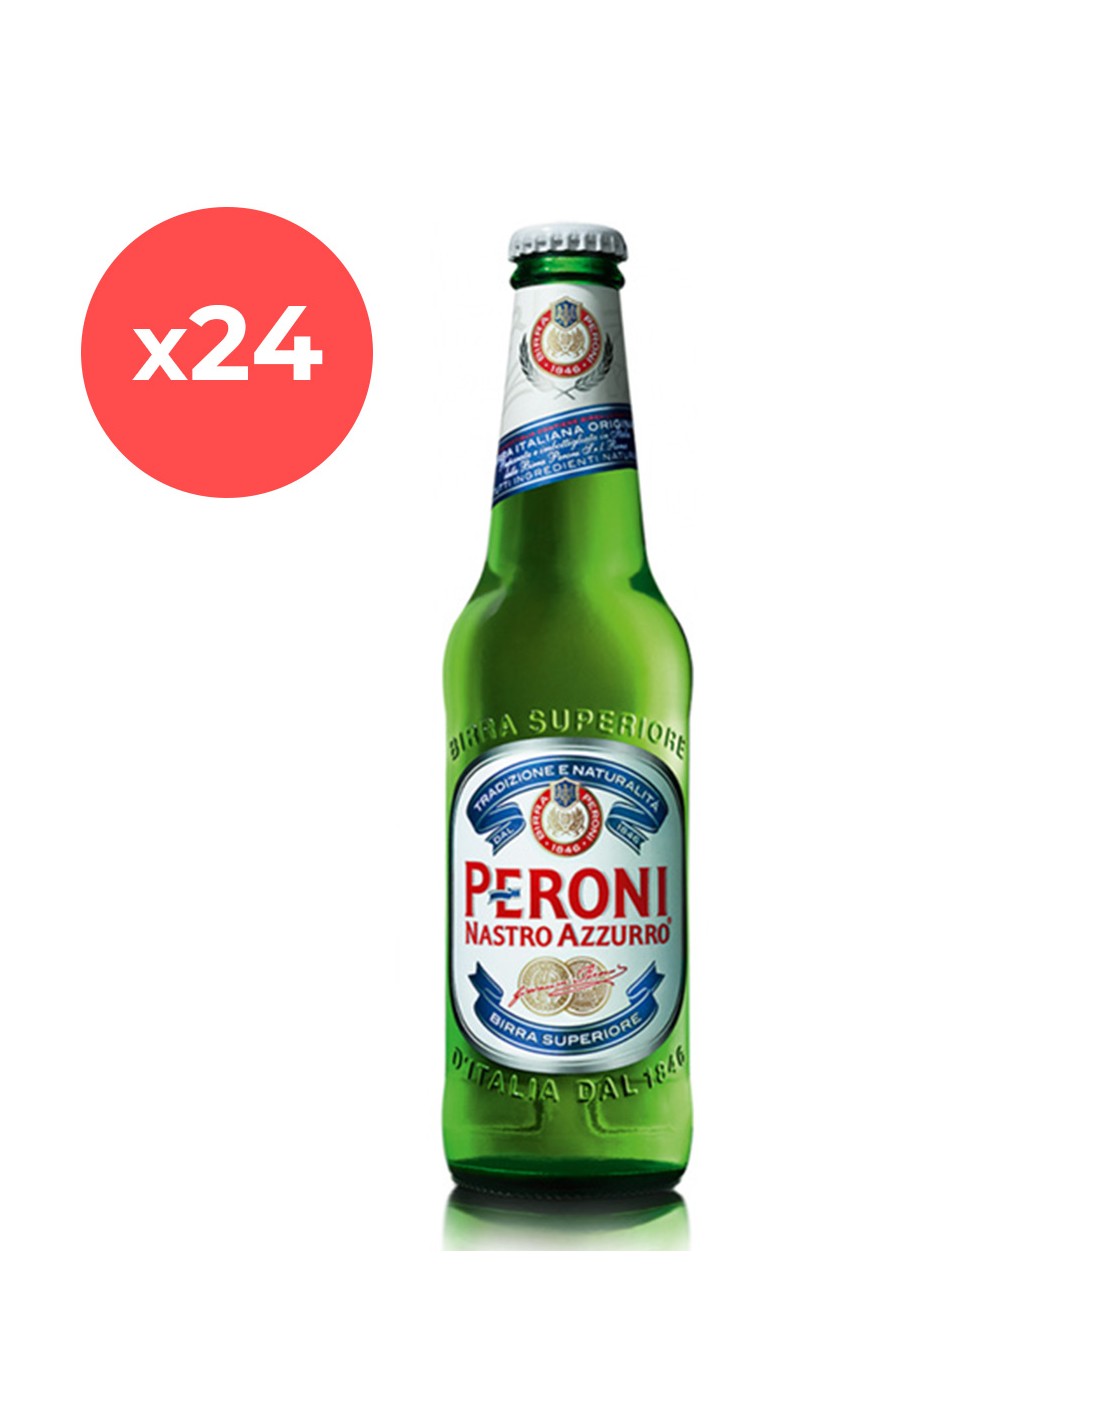 Bax 24 bucati bere blonda, filtrata Peroni Nastro Azzurro, 5.1% alc., 0.33L, sticla, Italia alcooldiscount.ro